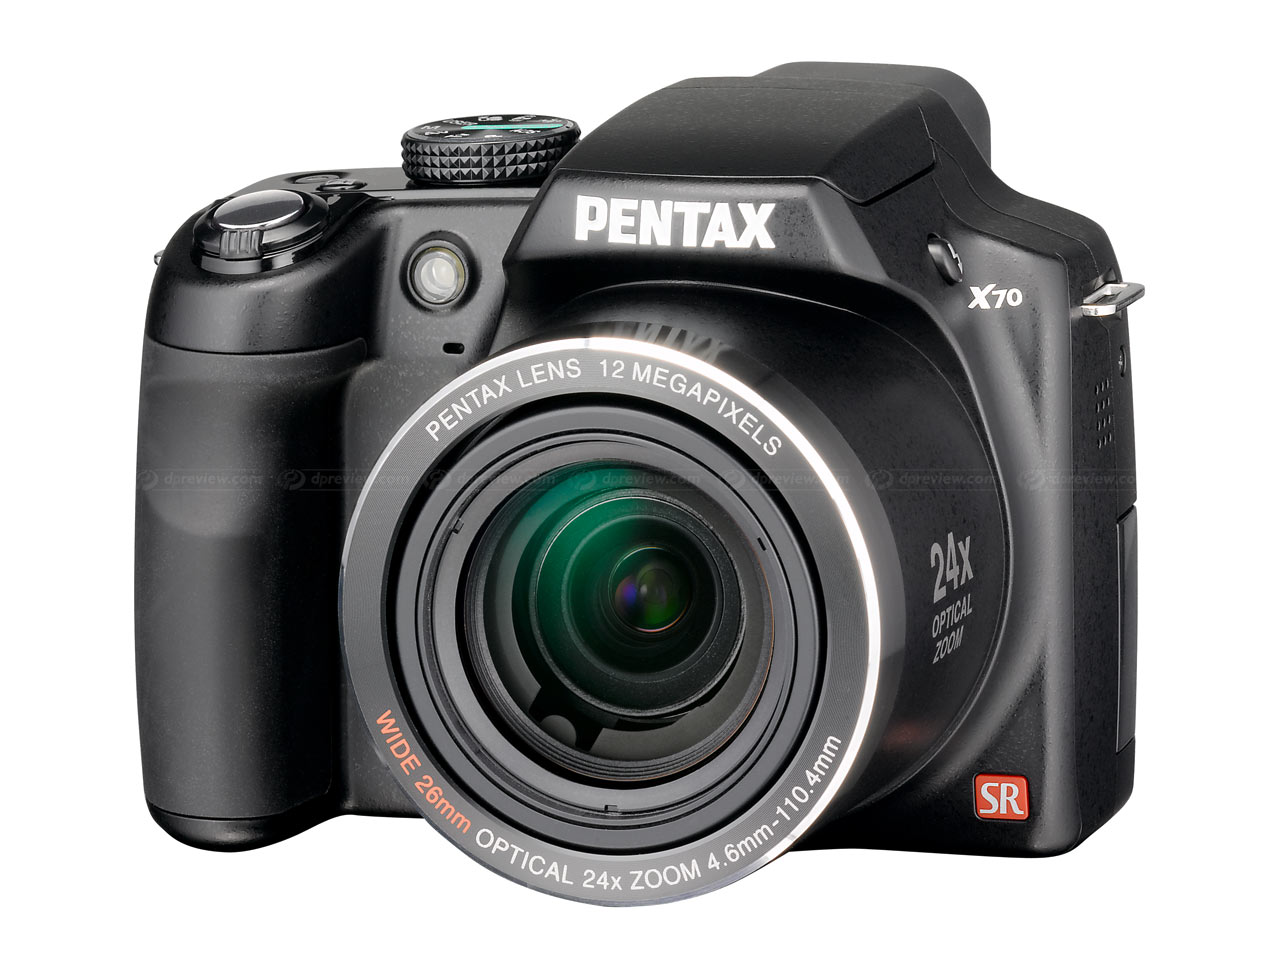 Pentax Optio X70 Digital Camera